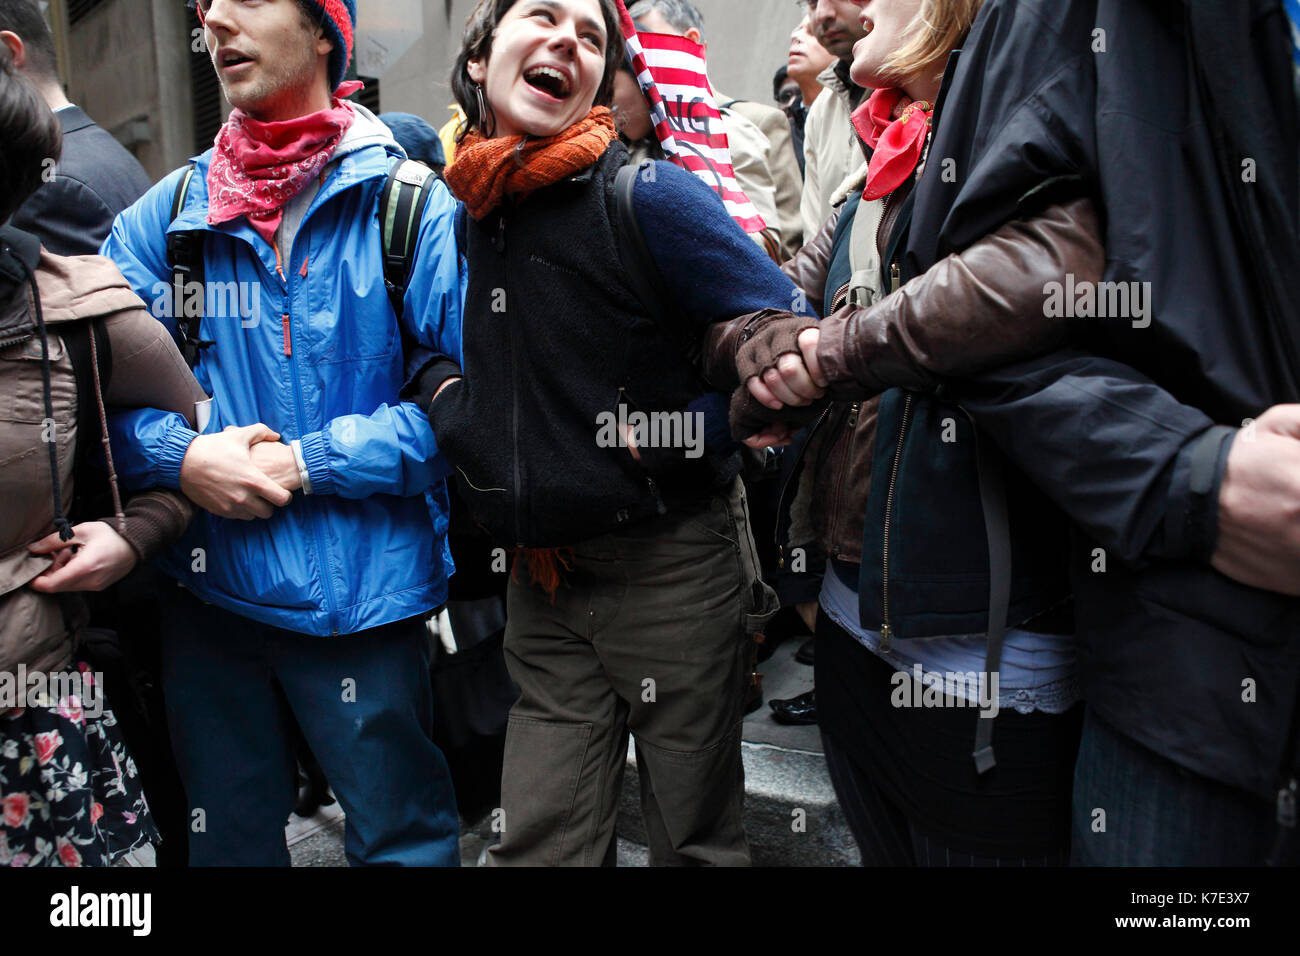 Demonstranten link Arme eine Menschenkette während der Besetzt die Wall Street März an der Wall Street in New York am 17. November 2011 zu bilden. Stockfoto